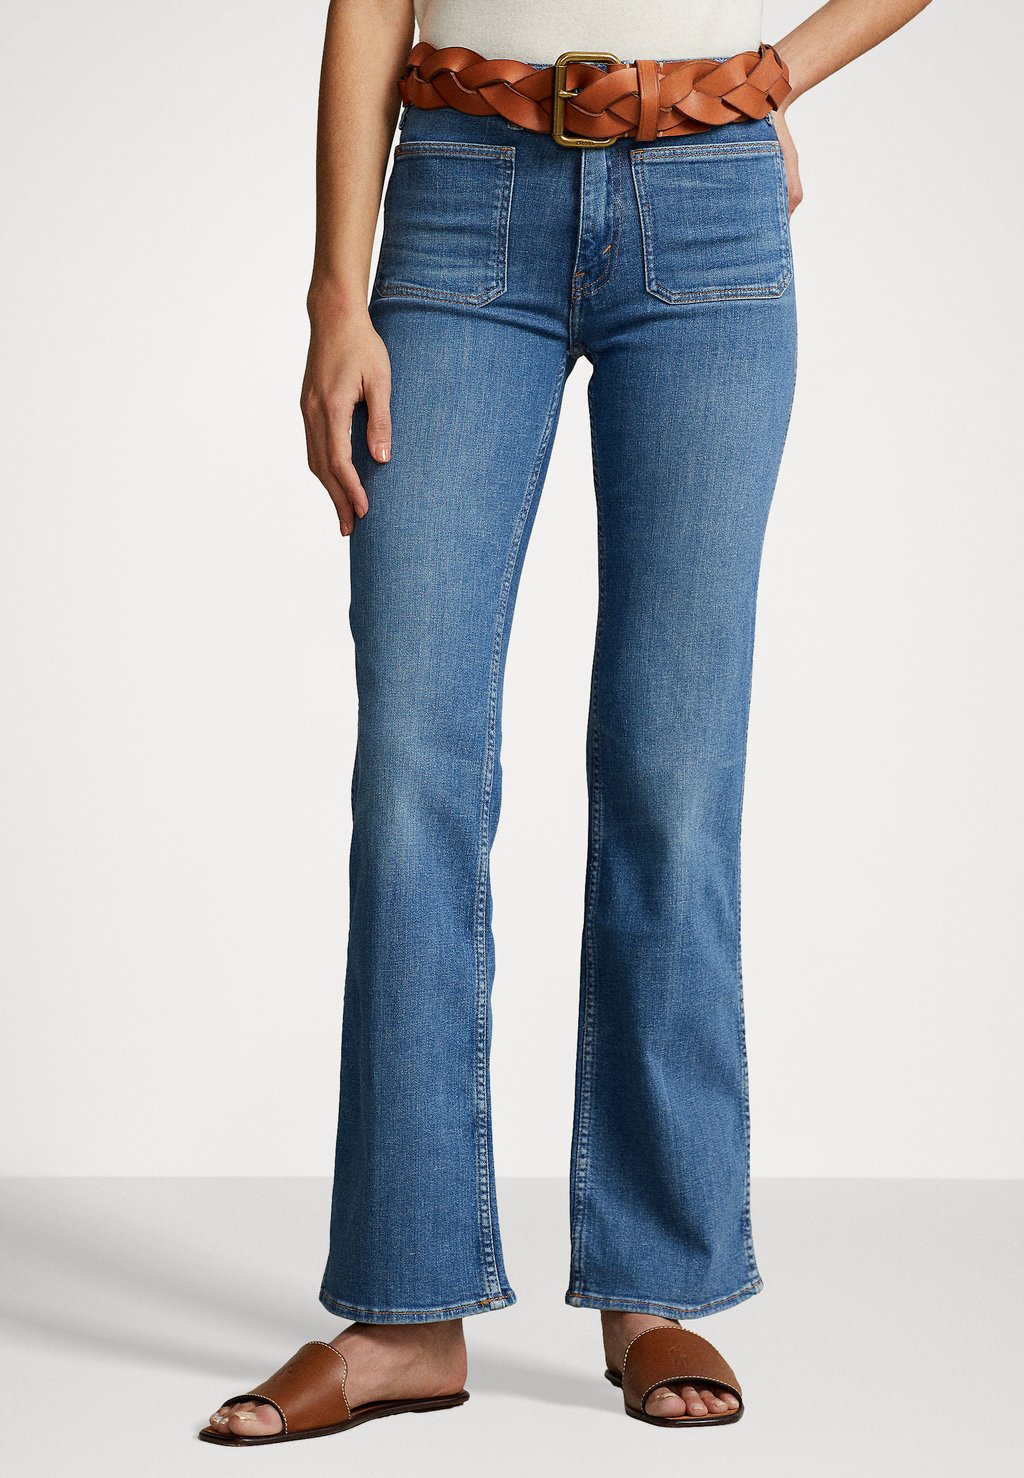 Расклешенные джинсы Polo Ralph Lauren фотографии